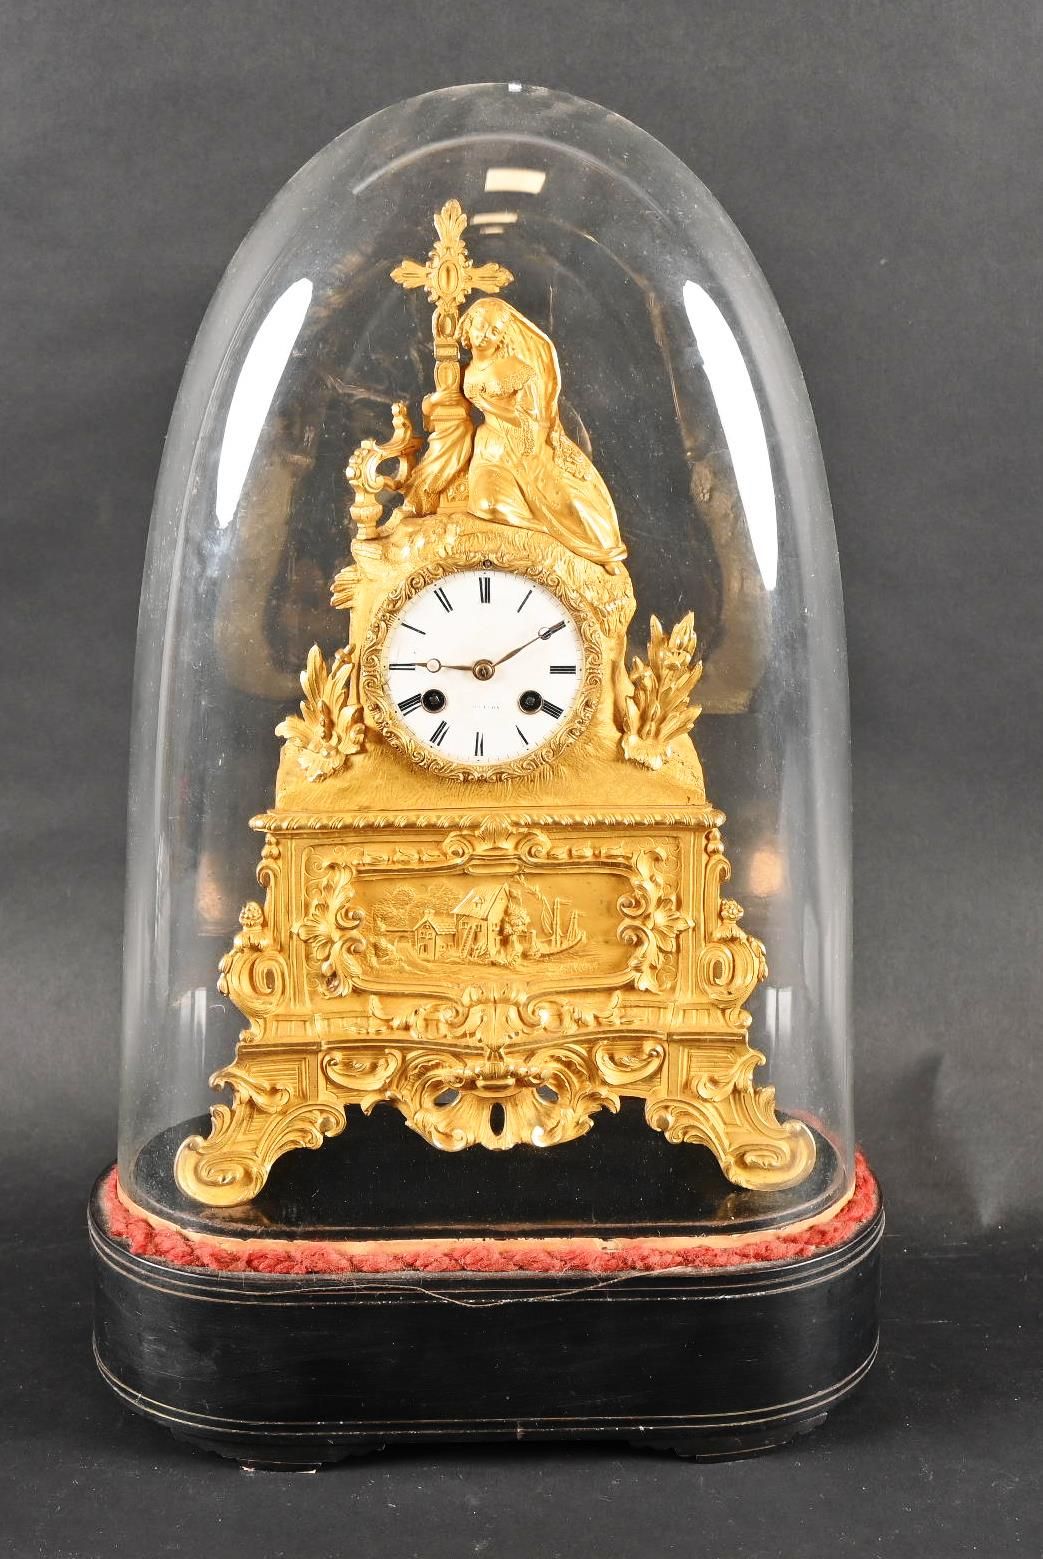 Pendule en bronze doré d'époque Louis-Philippe. 路易-菲利普时期的鎏金铜钟。
木质底座和玻璃球。
钟表机芯未被证&hellip;